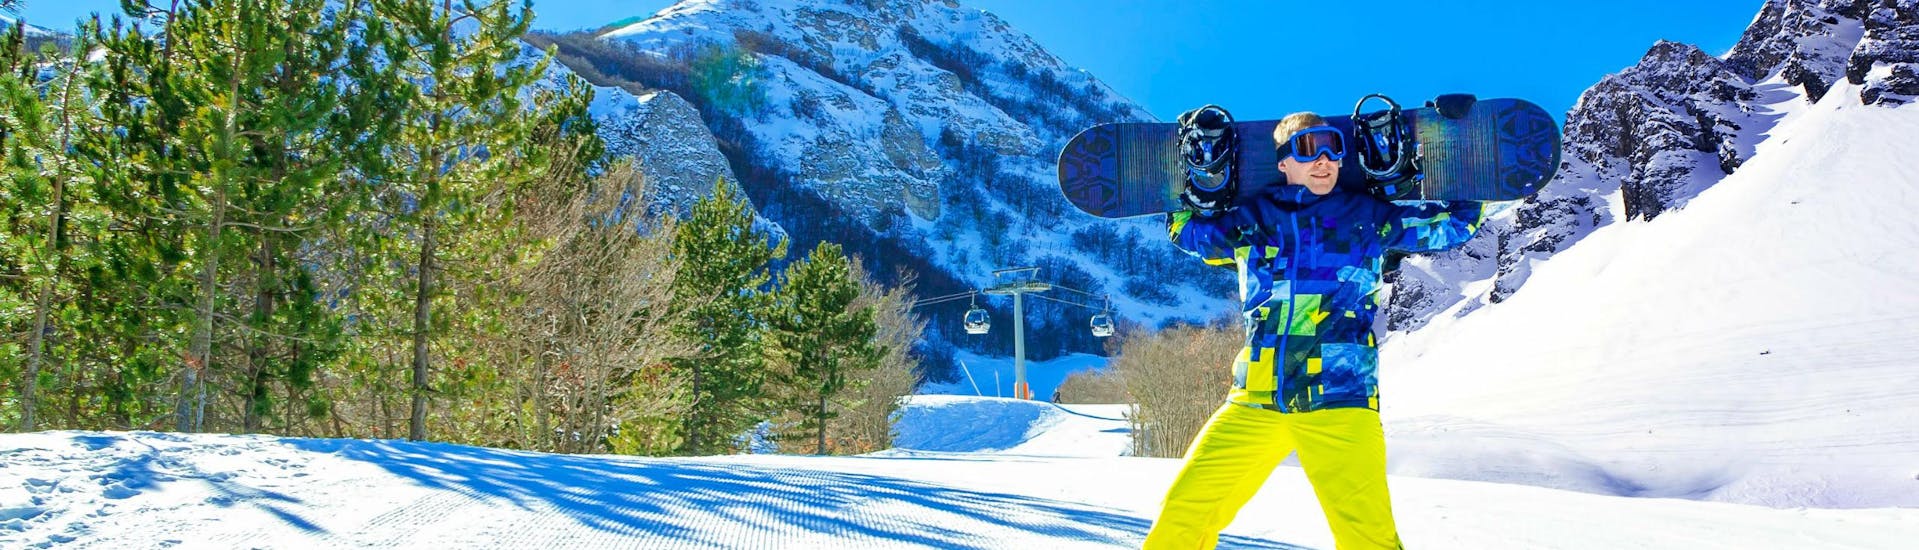 Ein Snowboarder posiert auf einer sonnigen Skipiste im italienischen Skigebiet Campo Felice, wo viele Skikurse von den örtlichen Skischulen angeboten werden.